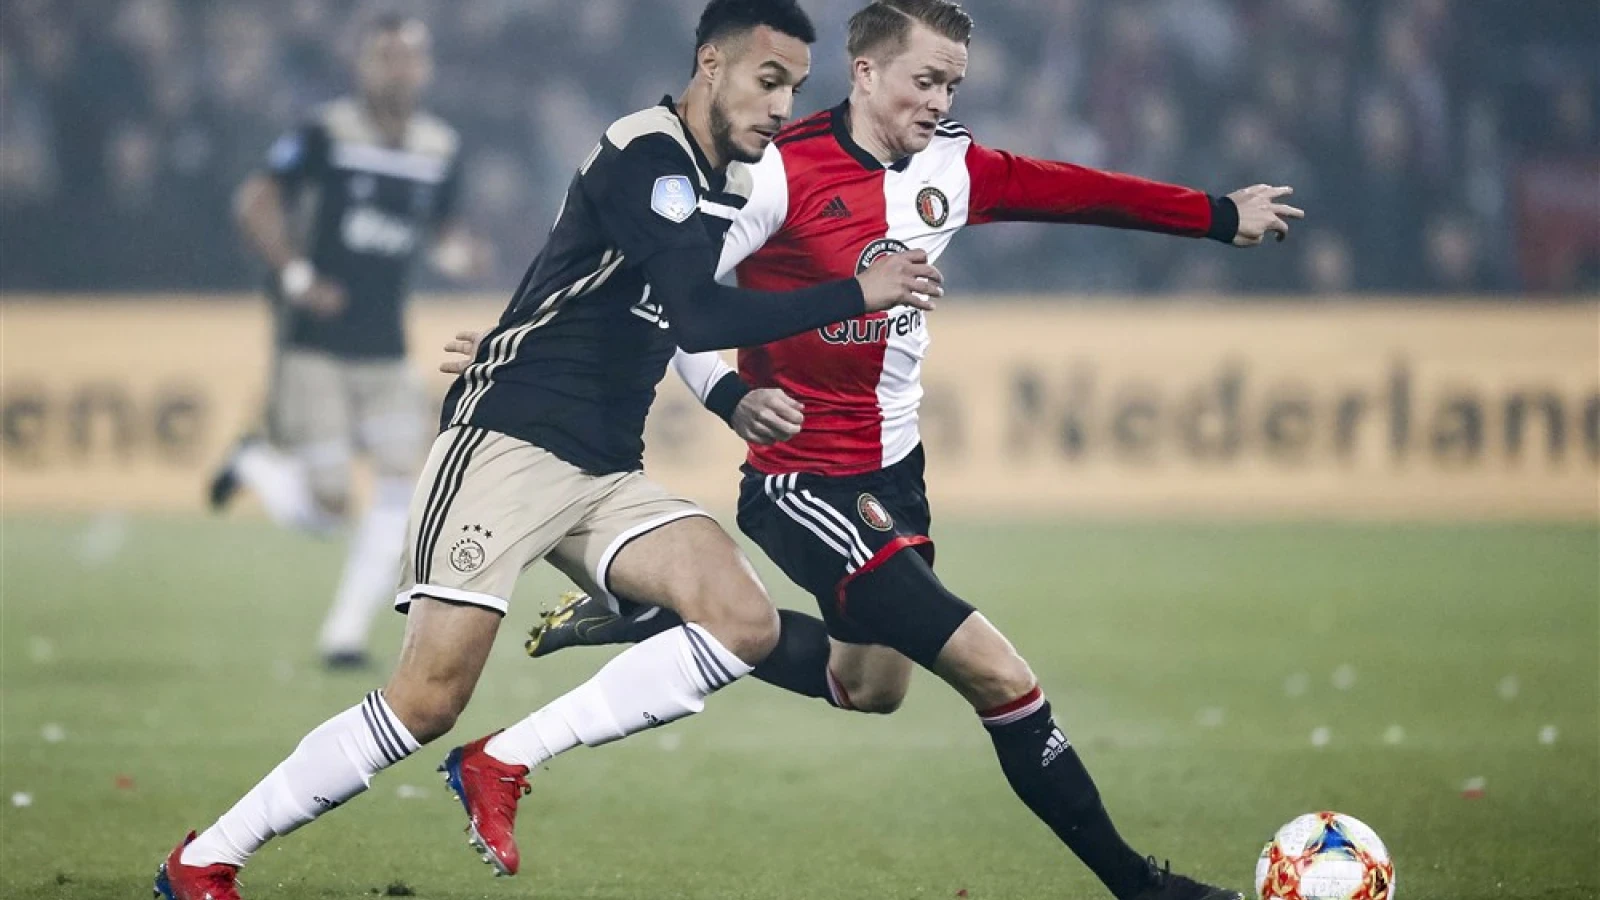 LIVE | Feyenoord - Ajax 0-3 | Einde wedstrijd